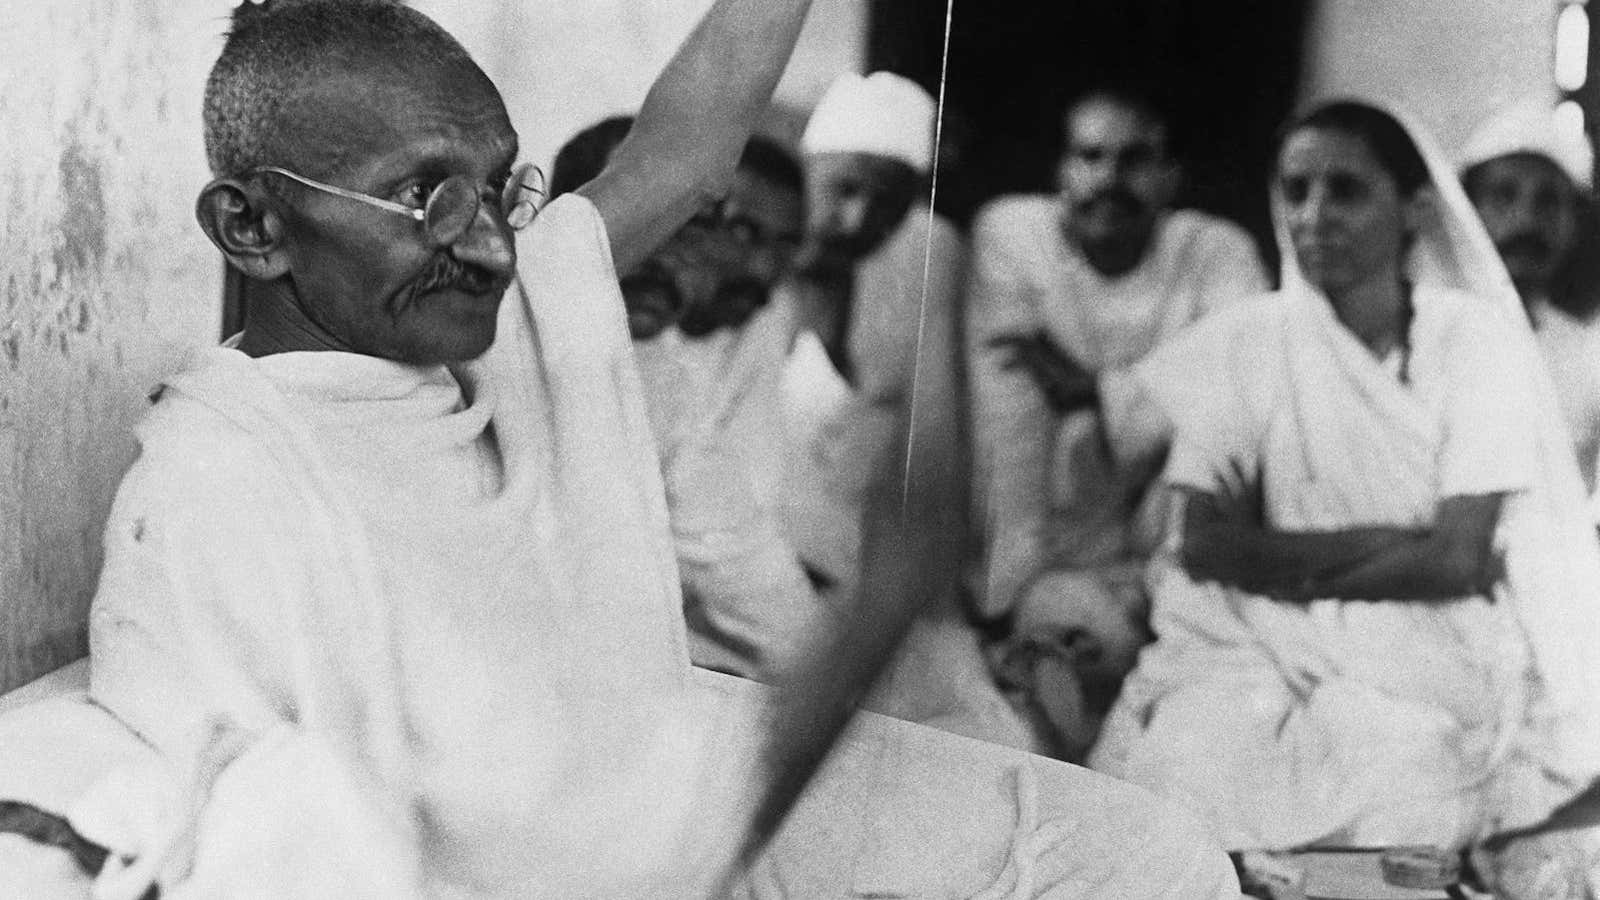 Gandhi spinning in an undated photo.